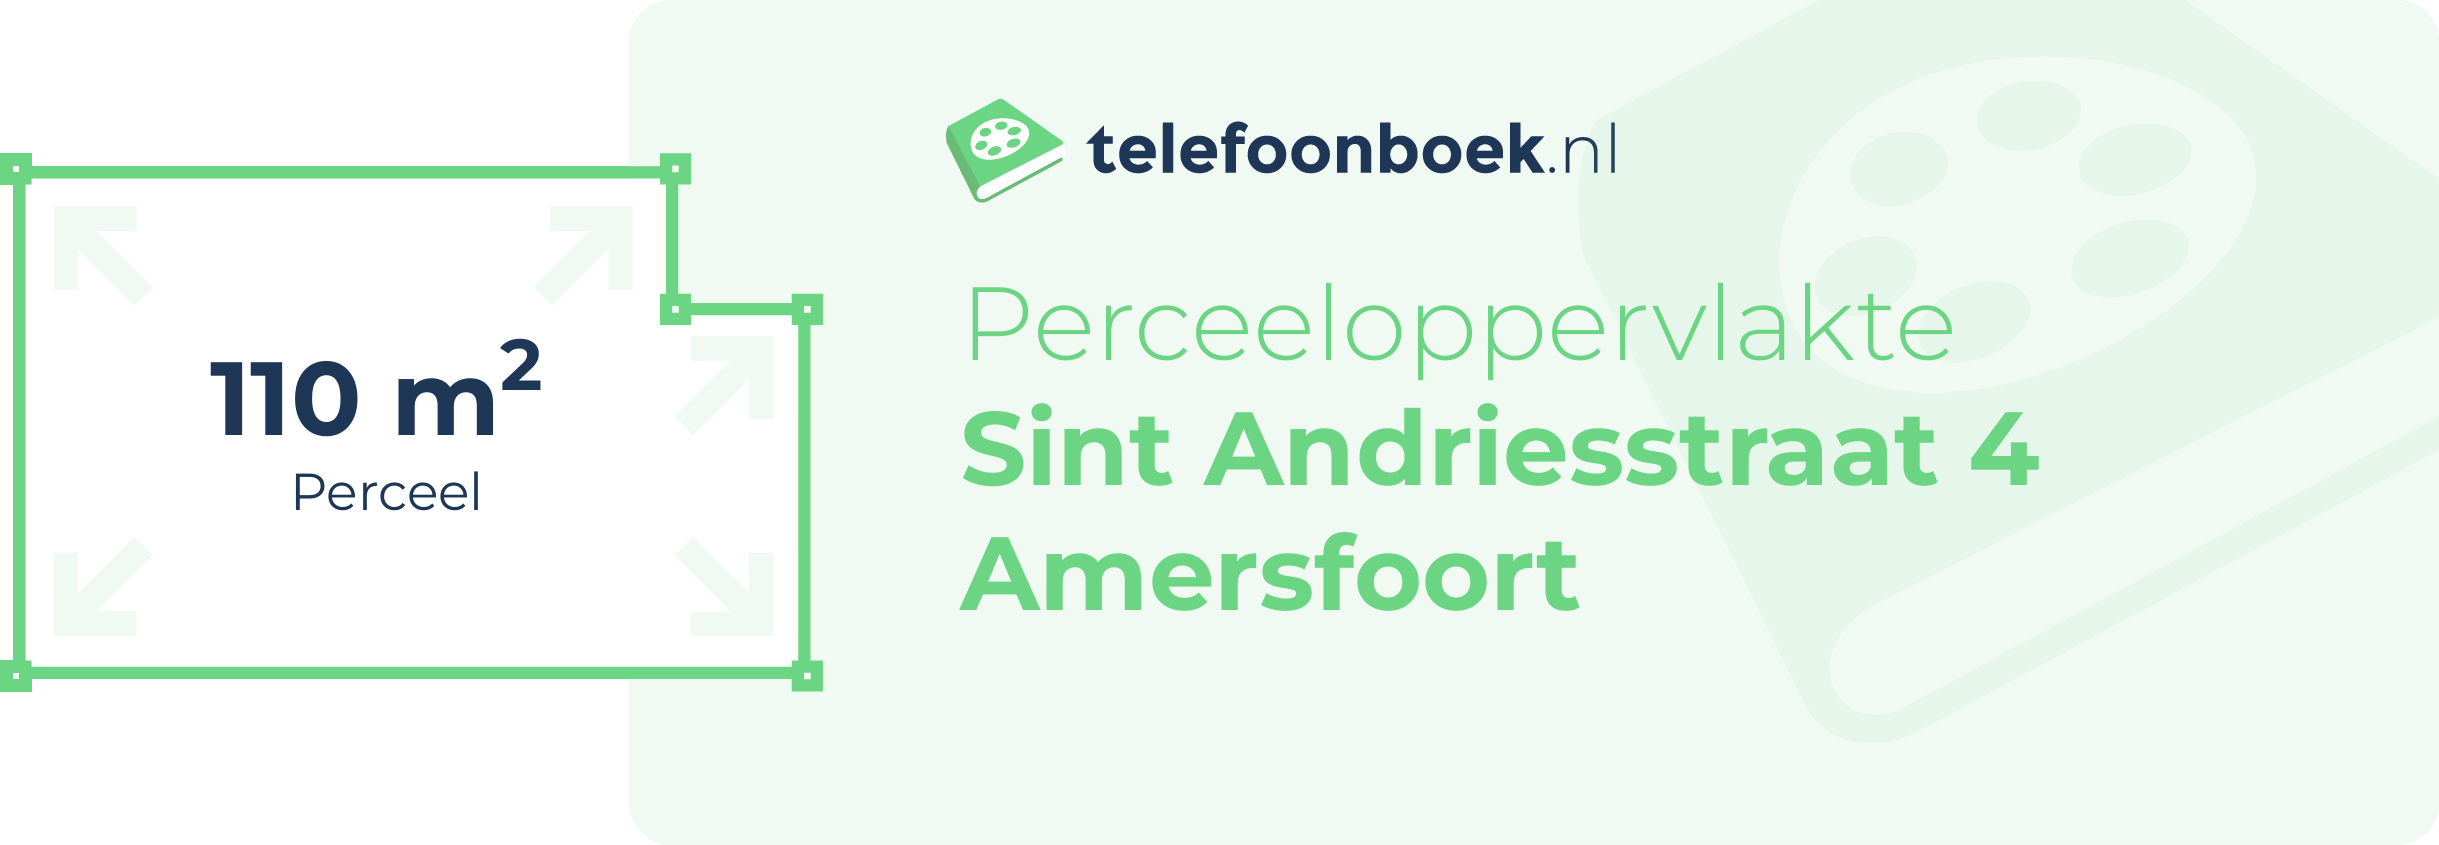 Perceeloppervlakte Sint Andriesstraat 4 Amersfoort